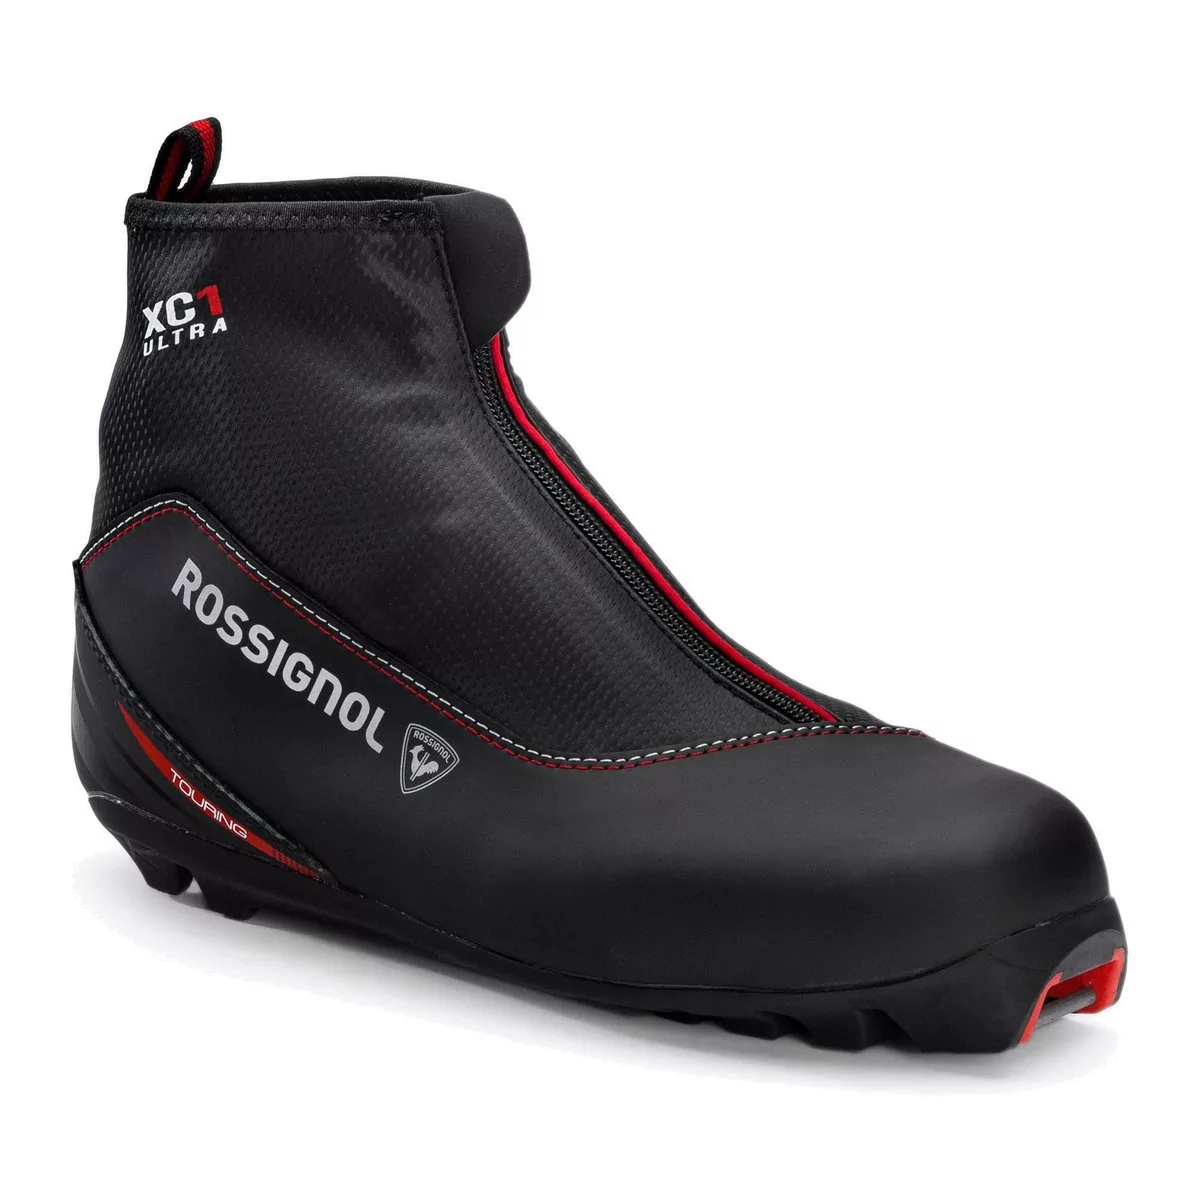 Buty do nart biegowych męskie Rossignol X-1 Ultra czarne RIJW080  47 eu